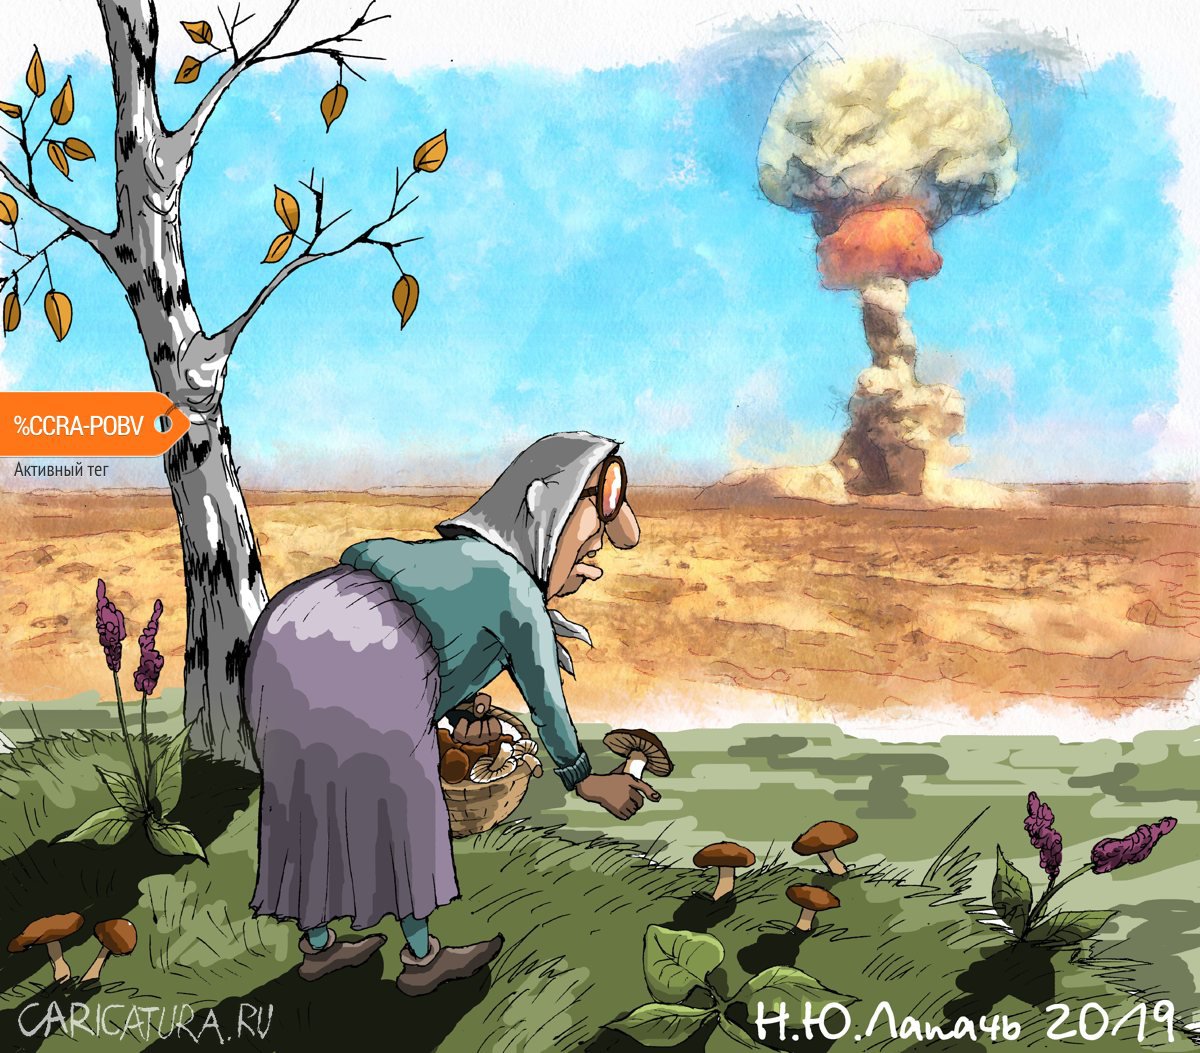 Карикатура "Грибное место", Теплый Телогрей